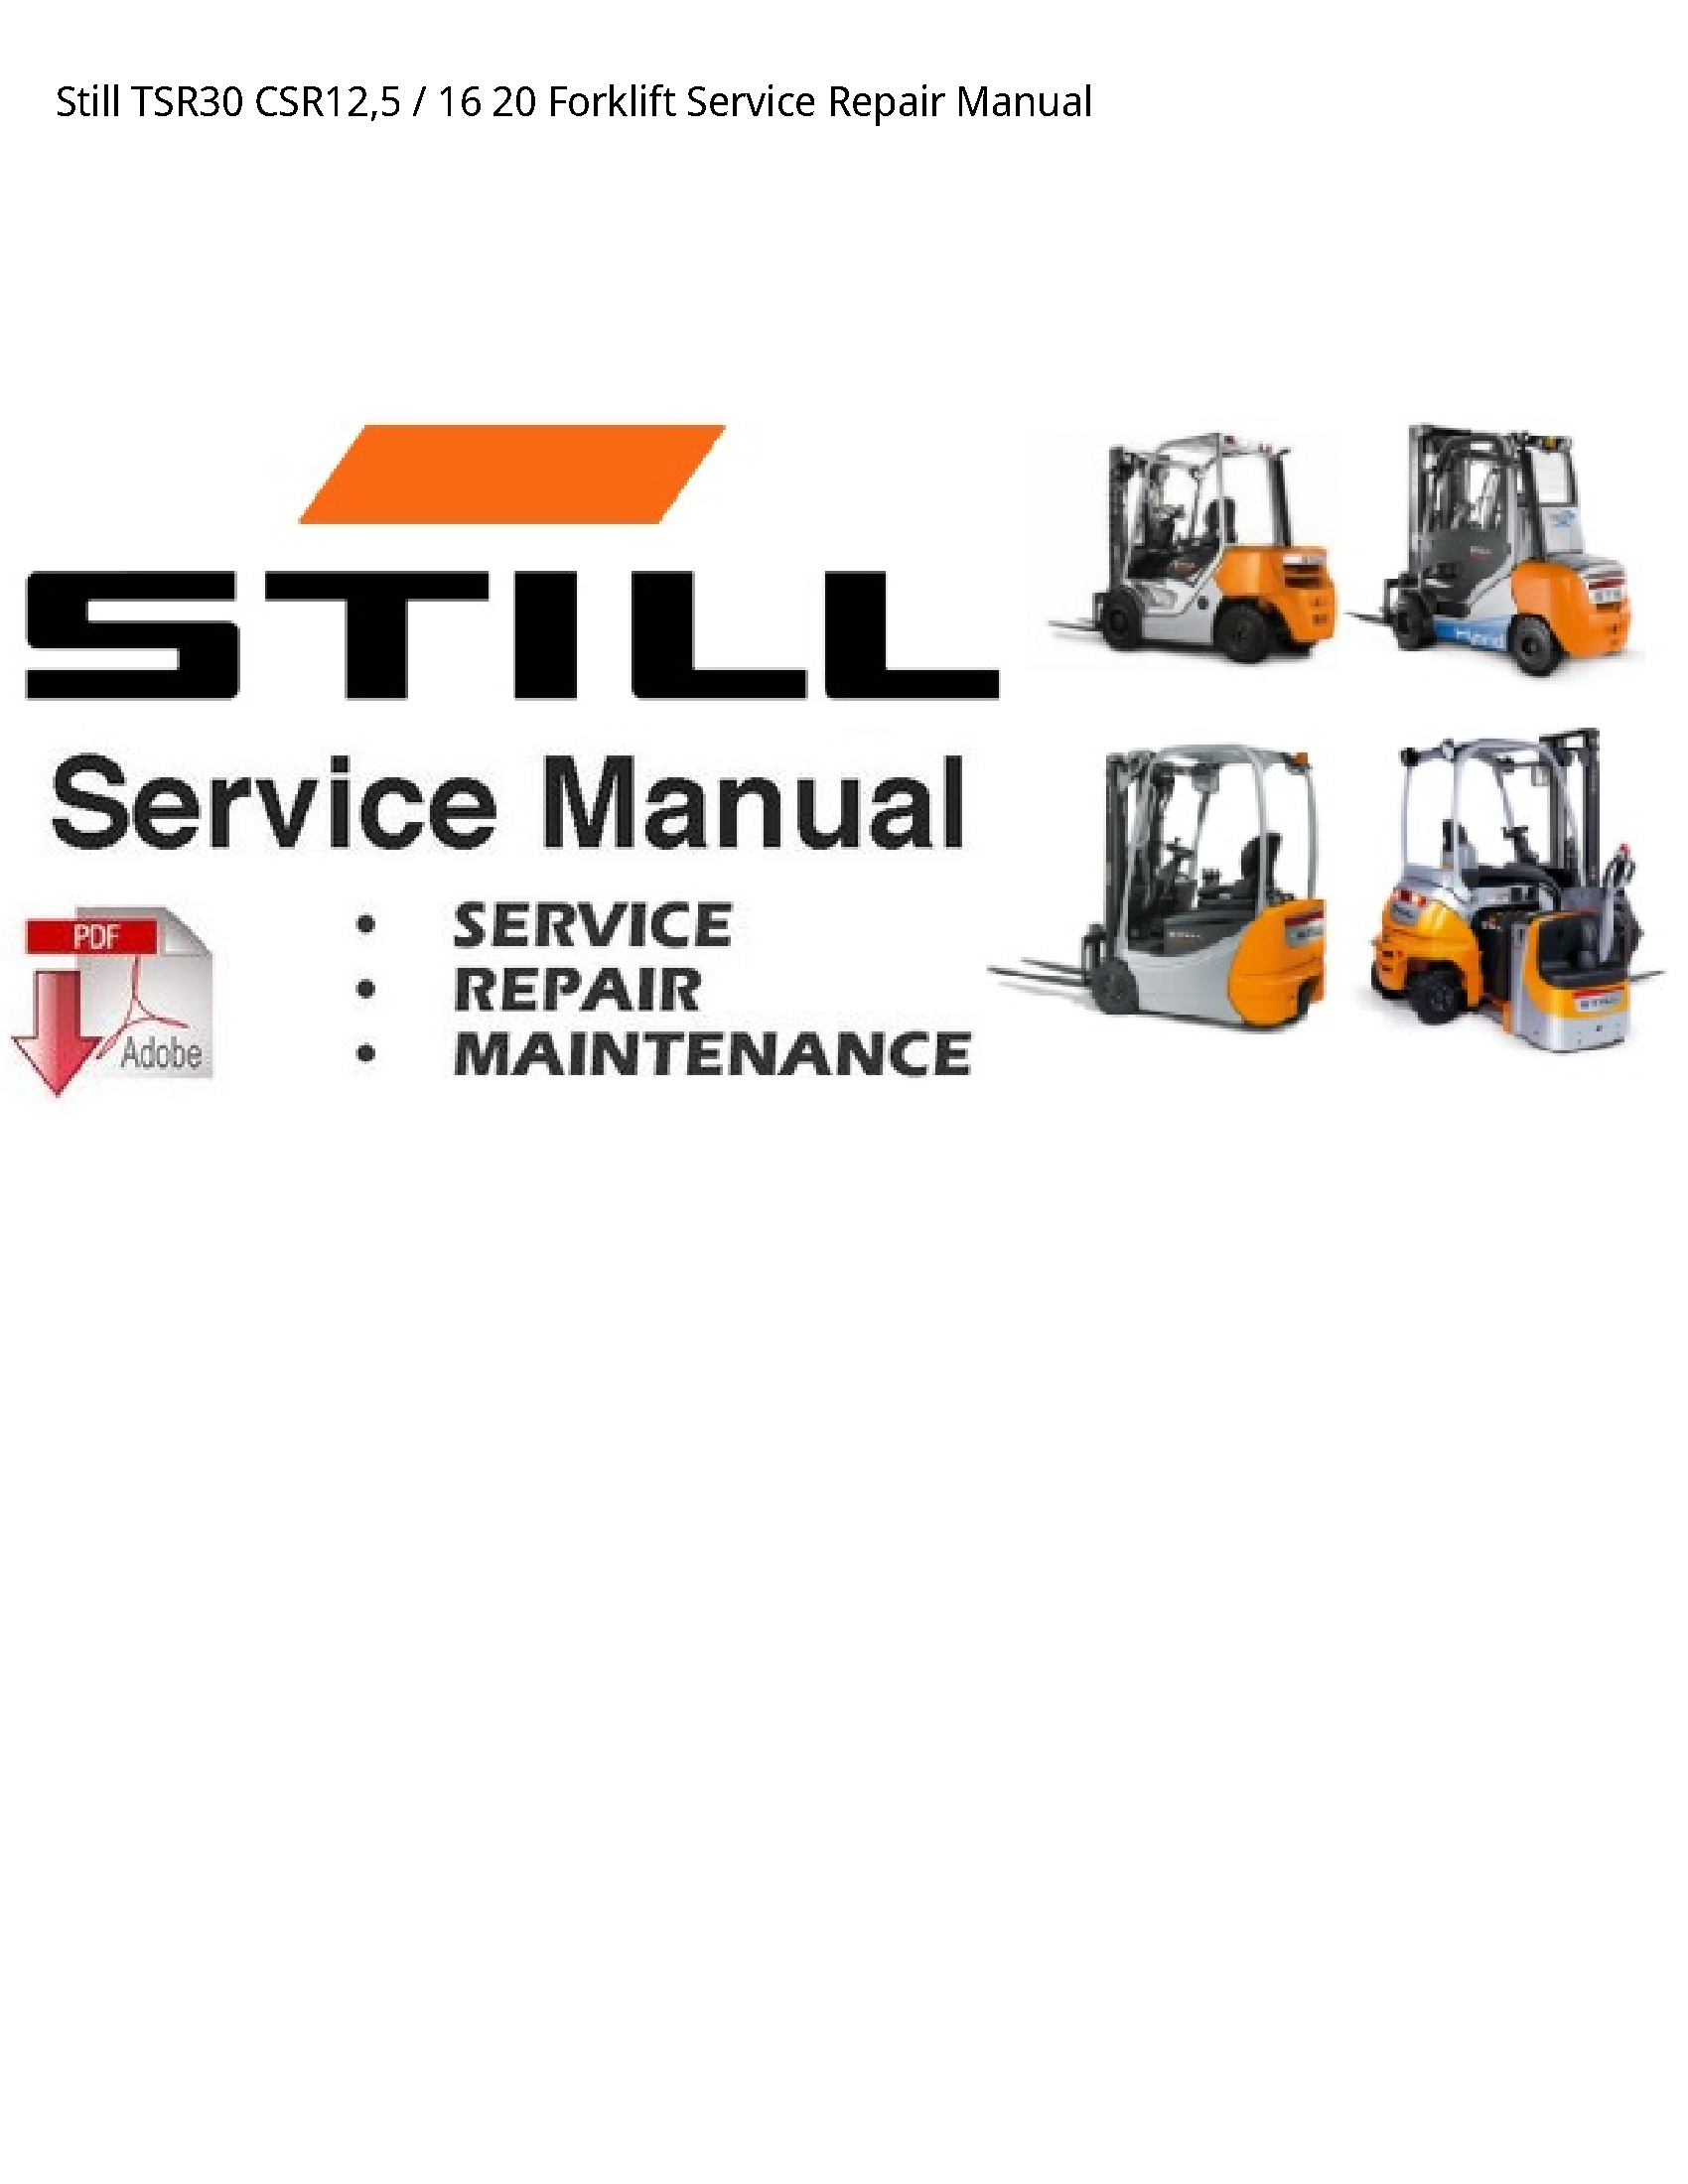 Still TSR30 Forklift manual